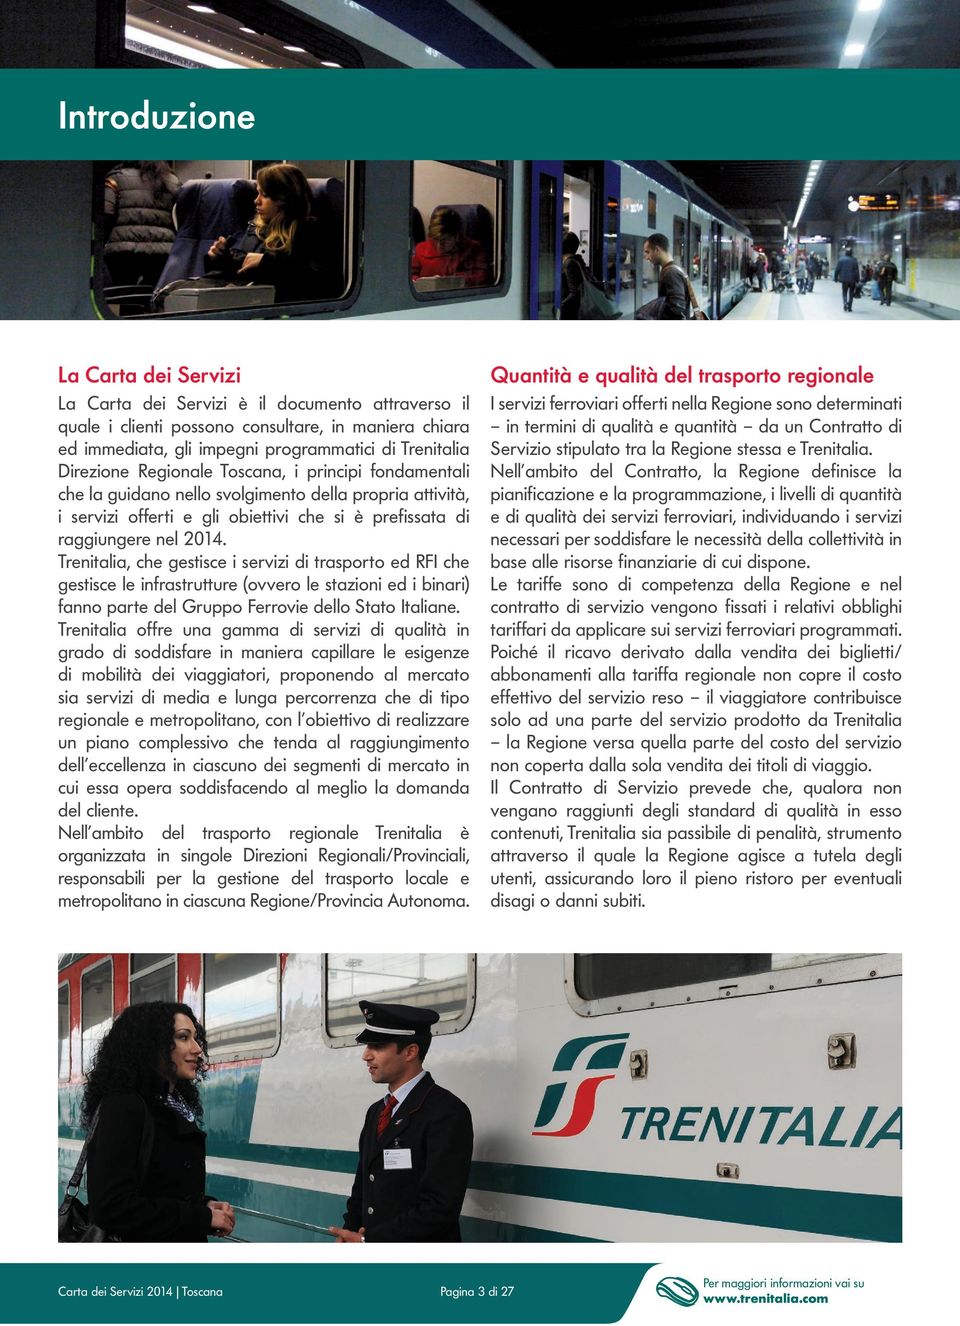 Trenitalia, che gestisce i servizi di trasporto ed RFI che gestisce le infrastrutture (ovvero le stazioni ed i binari) fanno parte del Gruppo Ferrovie dello Stato Italiane.